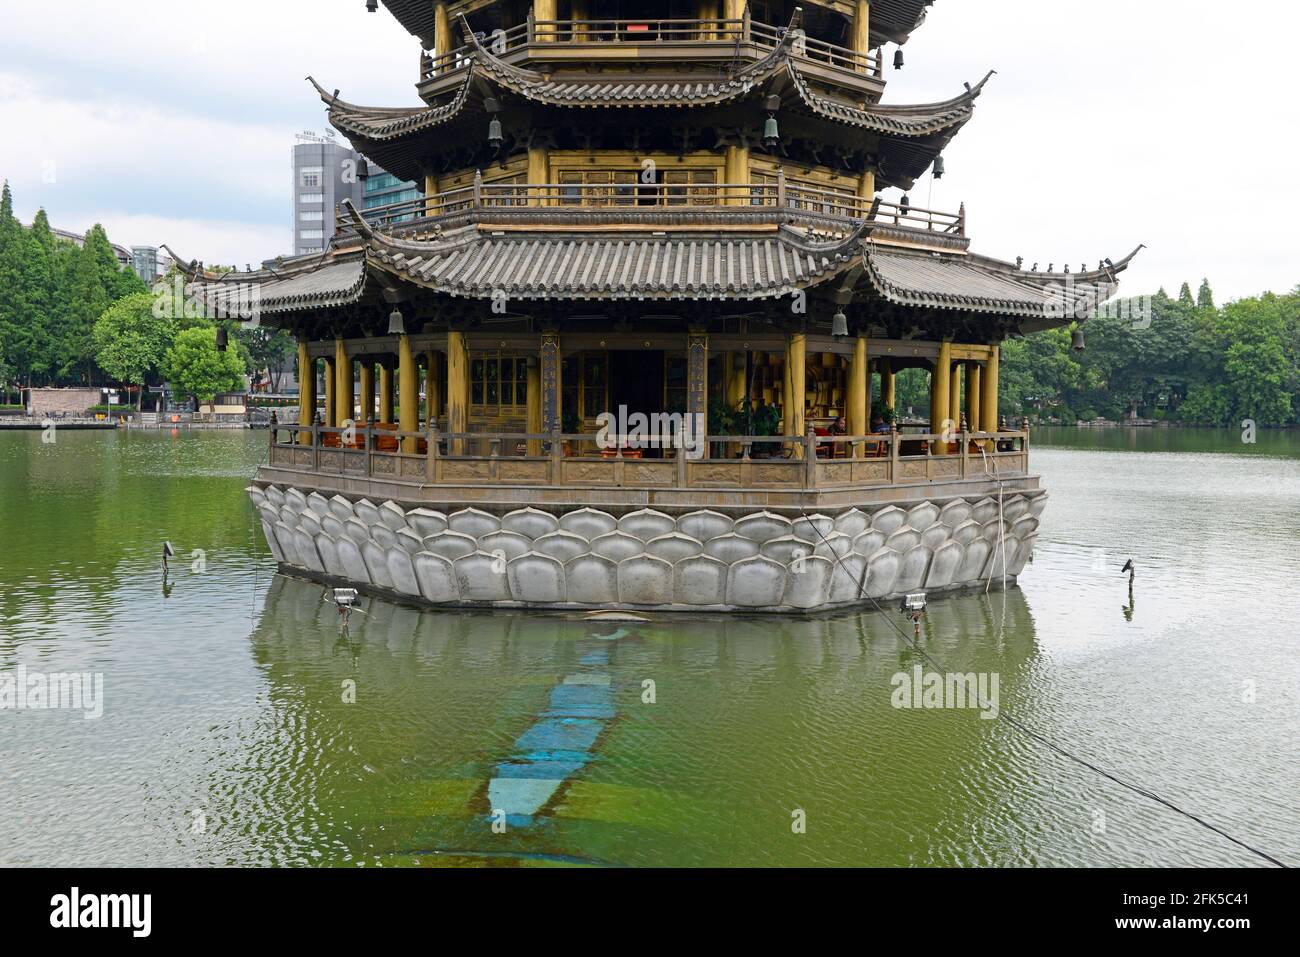 La pagoda de la Luna en Guilin. Las pagodas del Sol y la Luna fueron reconstruidas en 2001 de acuerdo a los planes antiguos. Guilin, Guangxi, China. Foto de stock